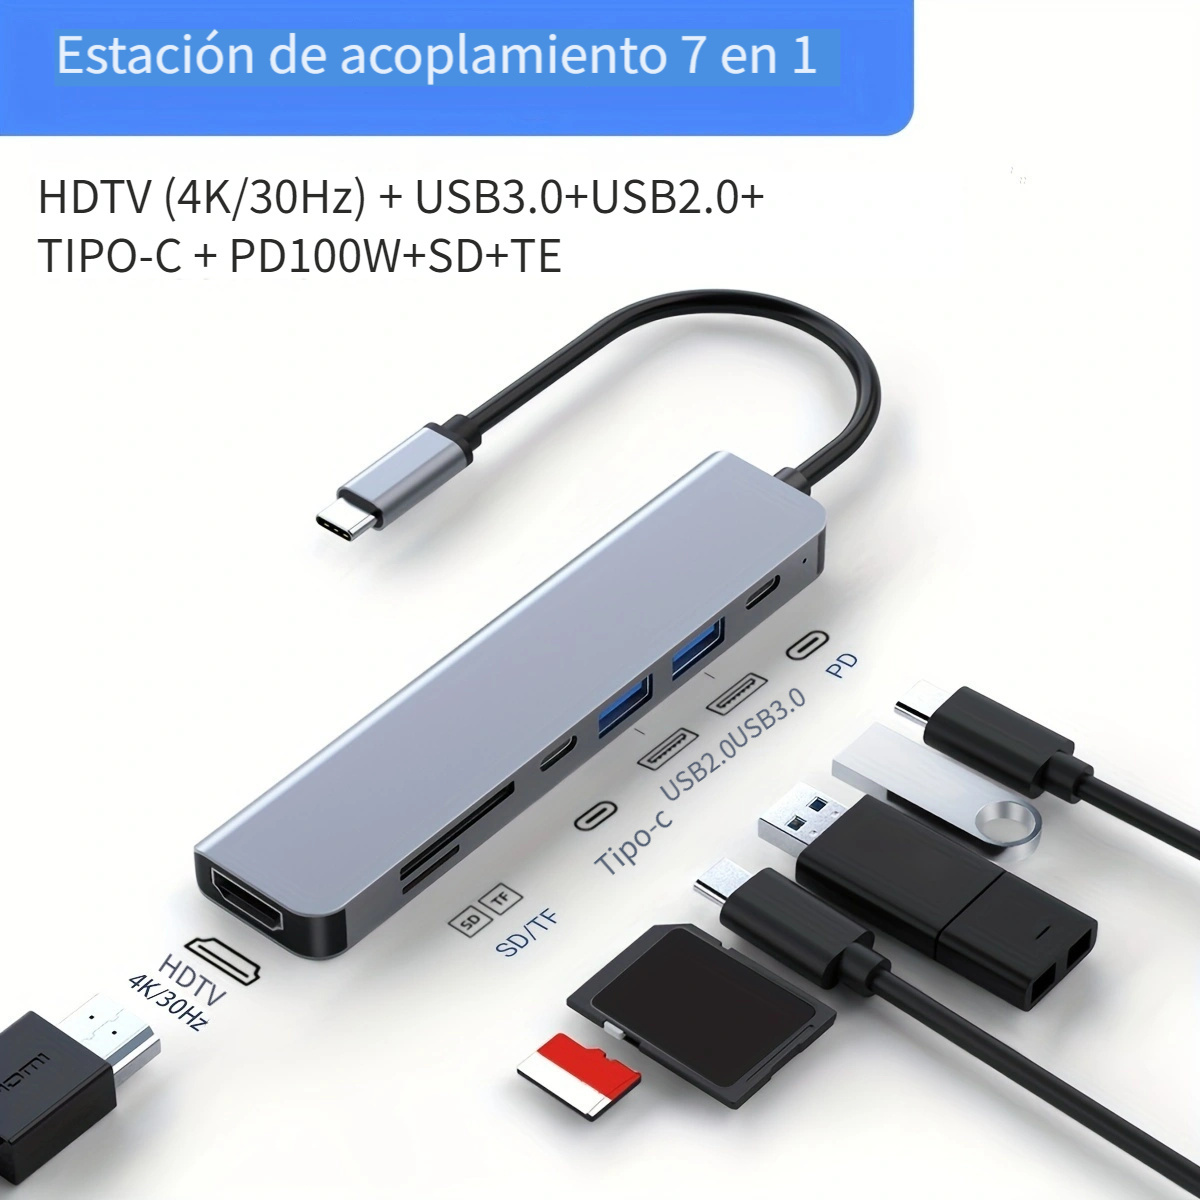 Adaptador USB C para MacBook Pro/Air, MOKiN USB C Hub, Mac Dongle, 7 en 1  multipuertos USB C Hub a 3 USB 3.0, 4K HDMI, lector de tarjetas SD/TF y